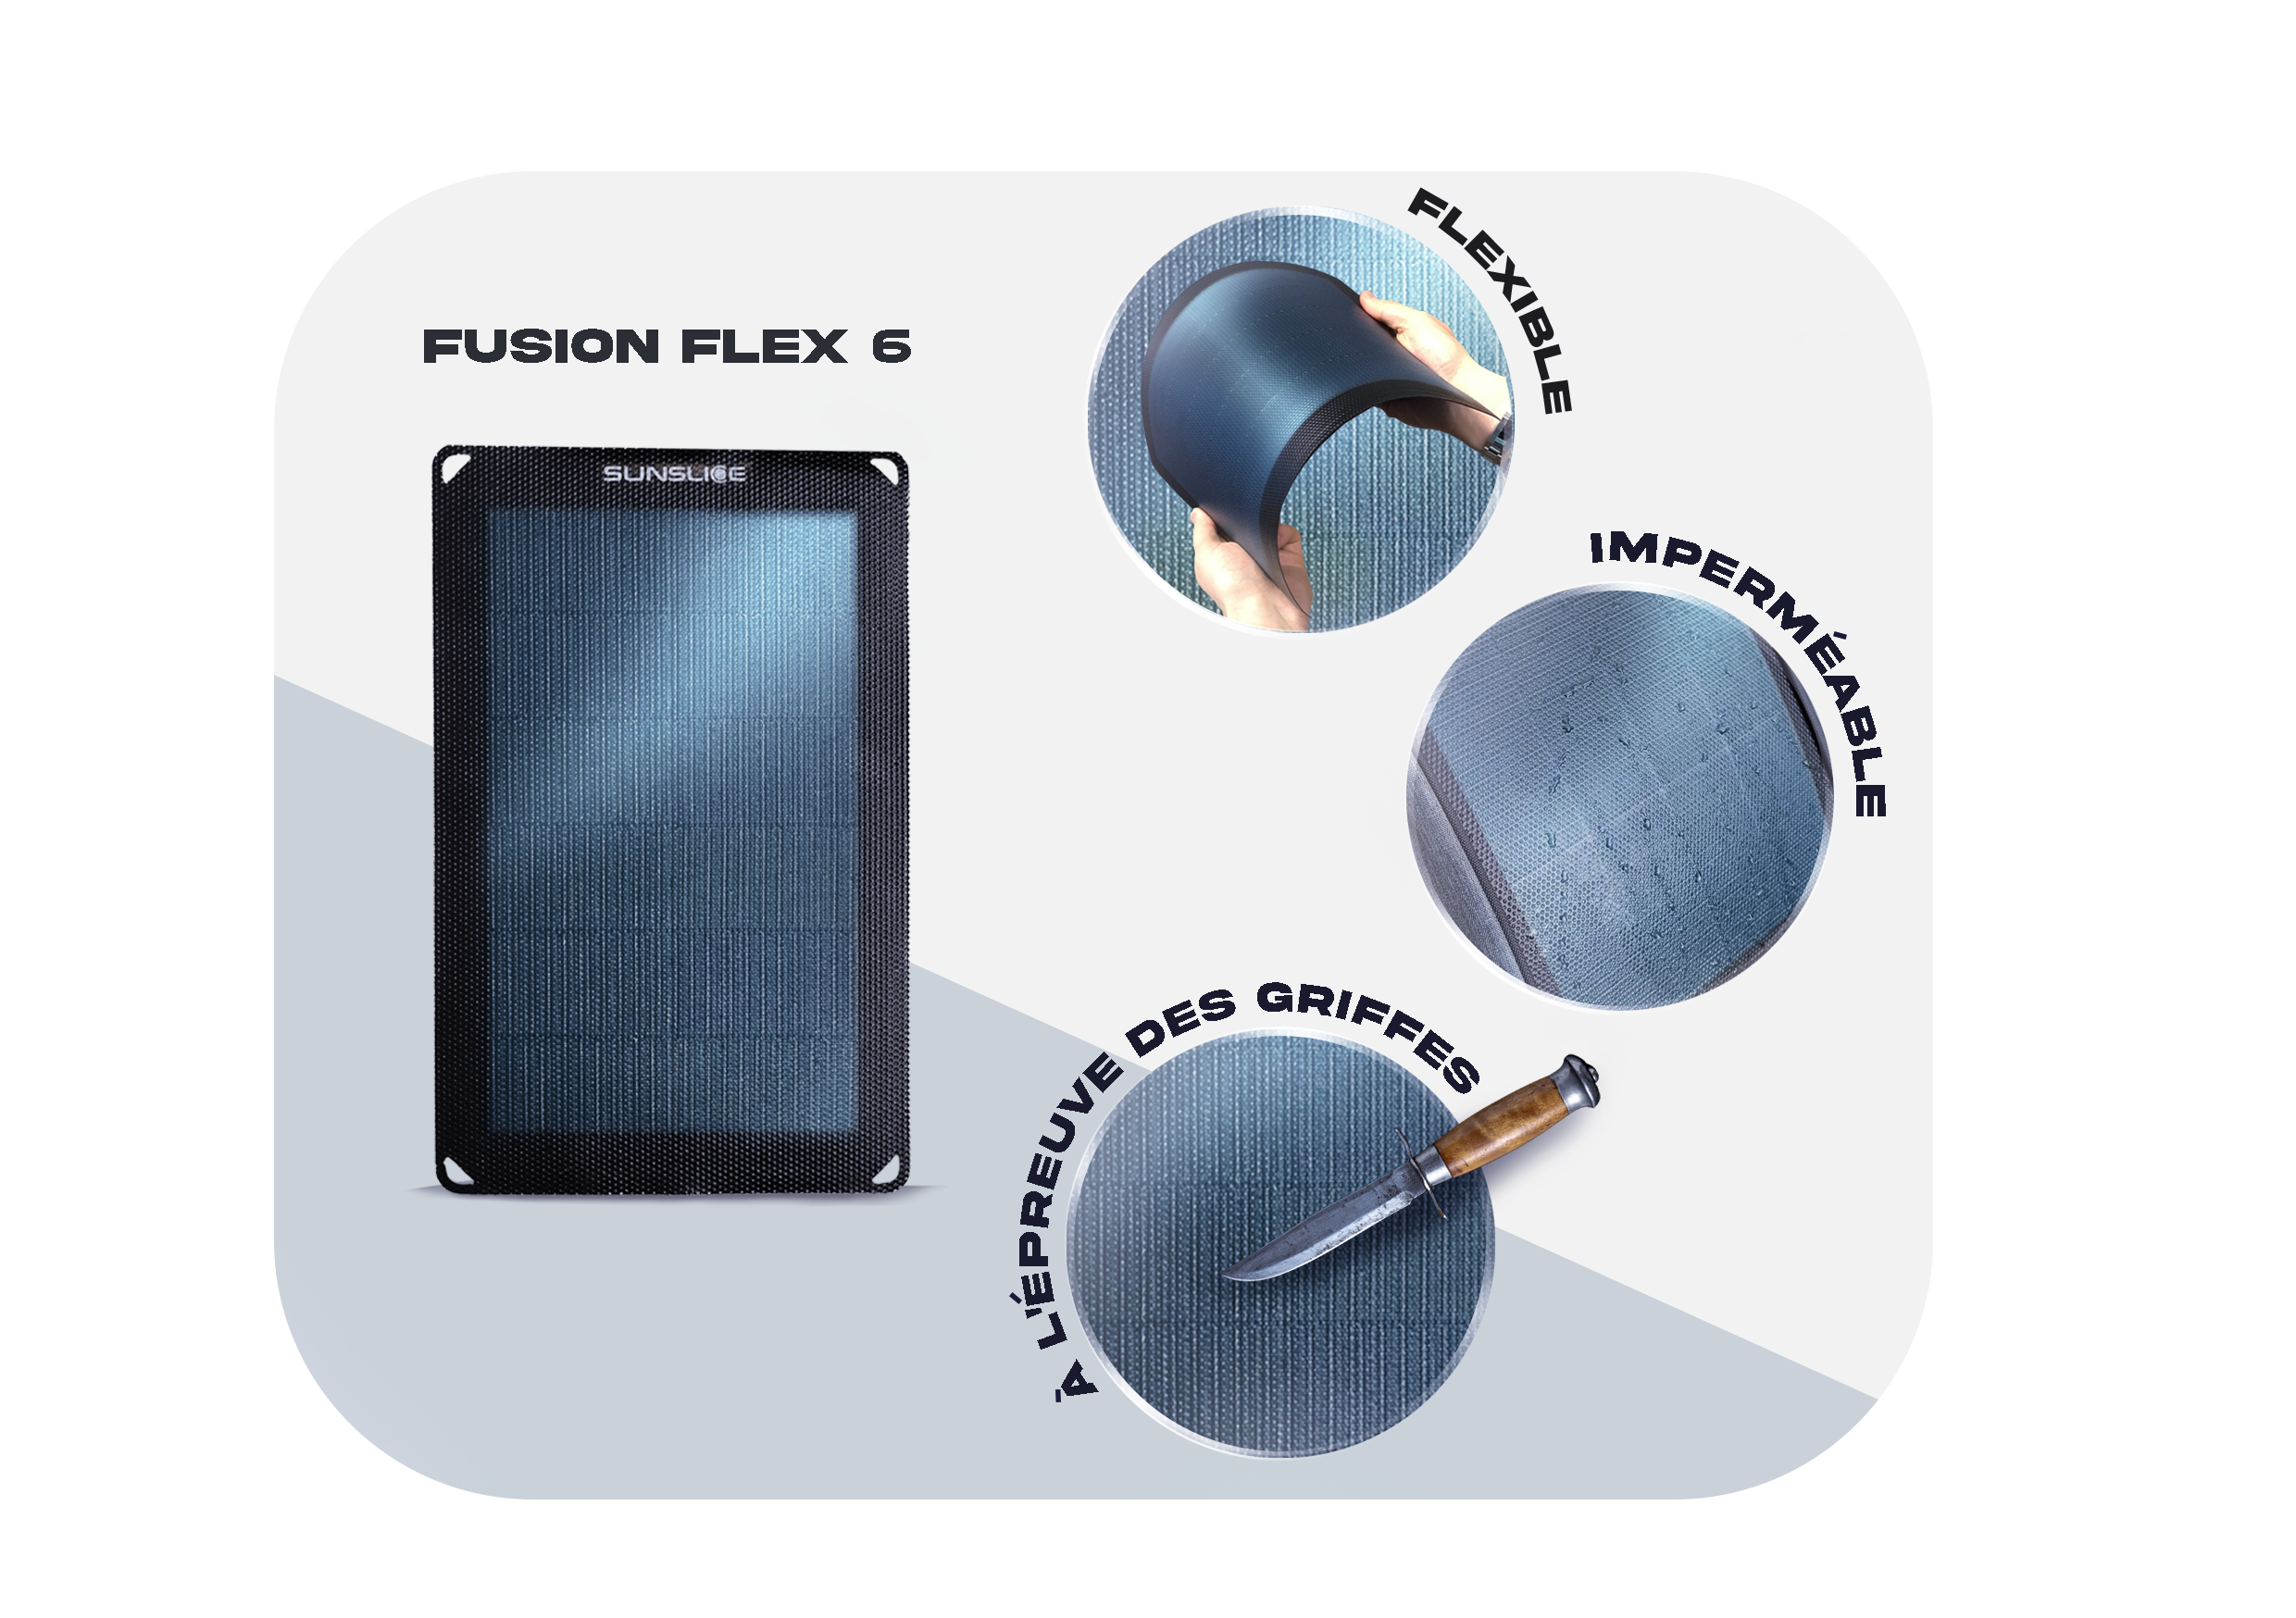 Panneau solaire fusion 6, Flexible, Waterproof, scratchpoof sur fond bleu et blanc .